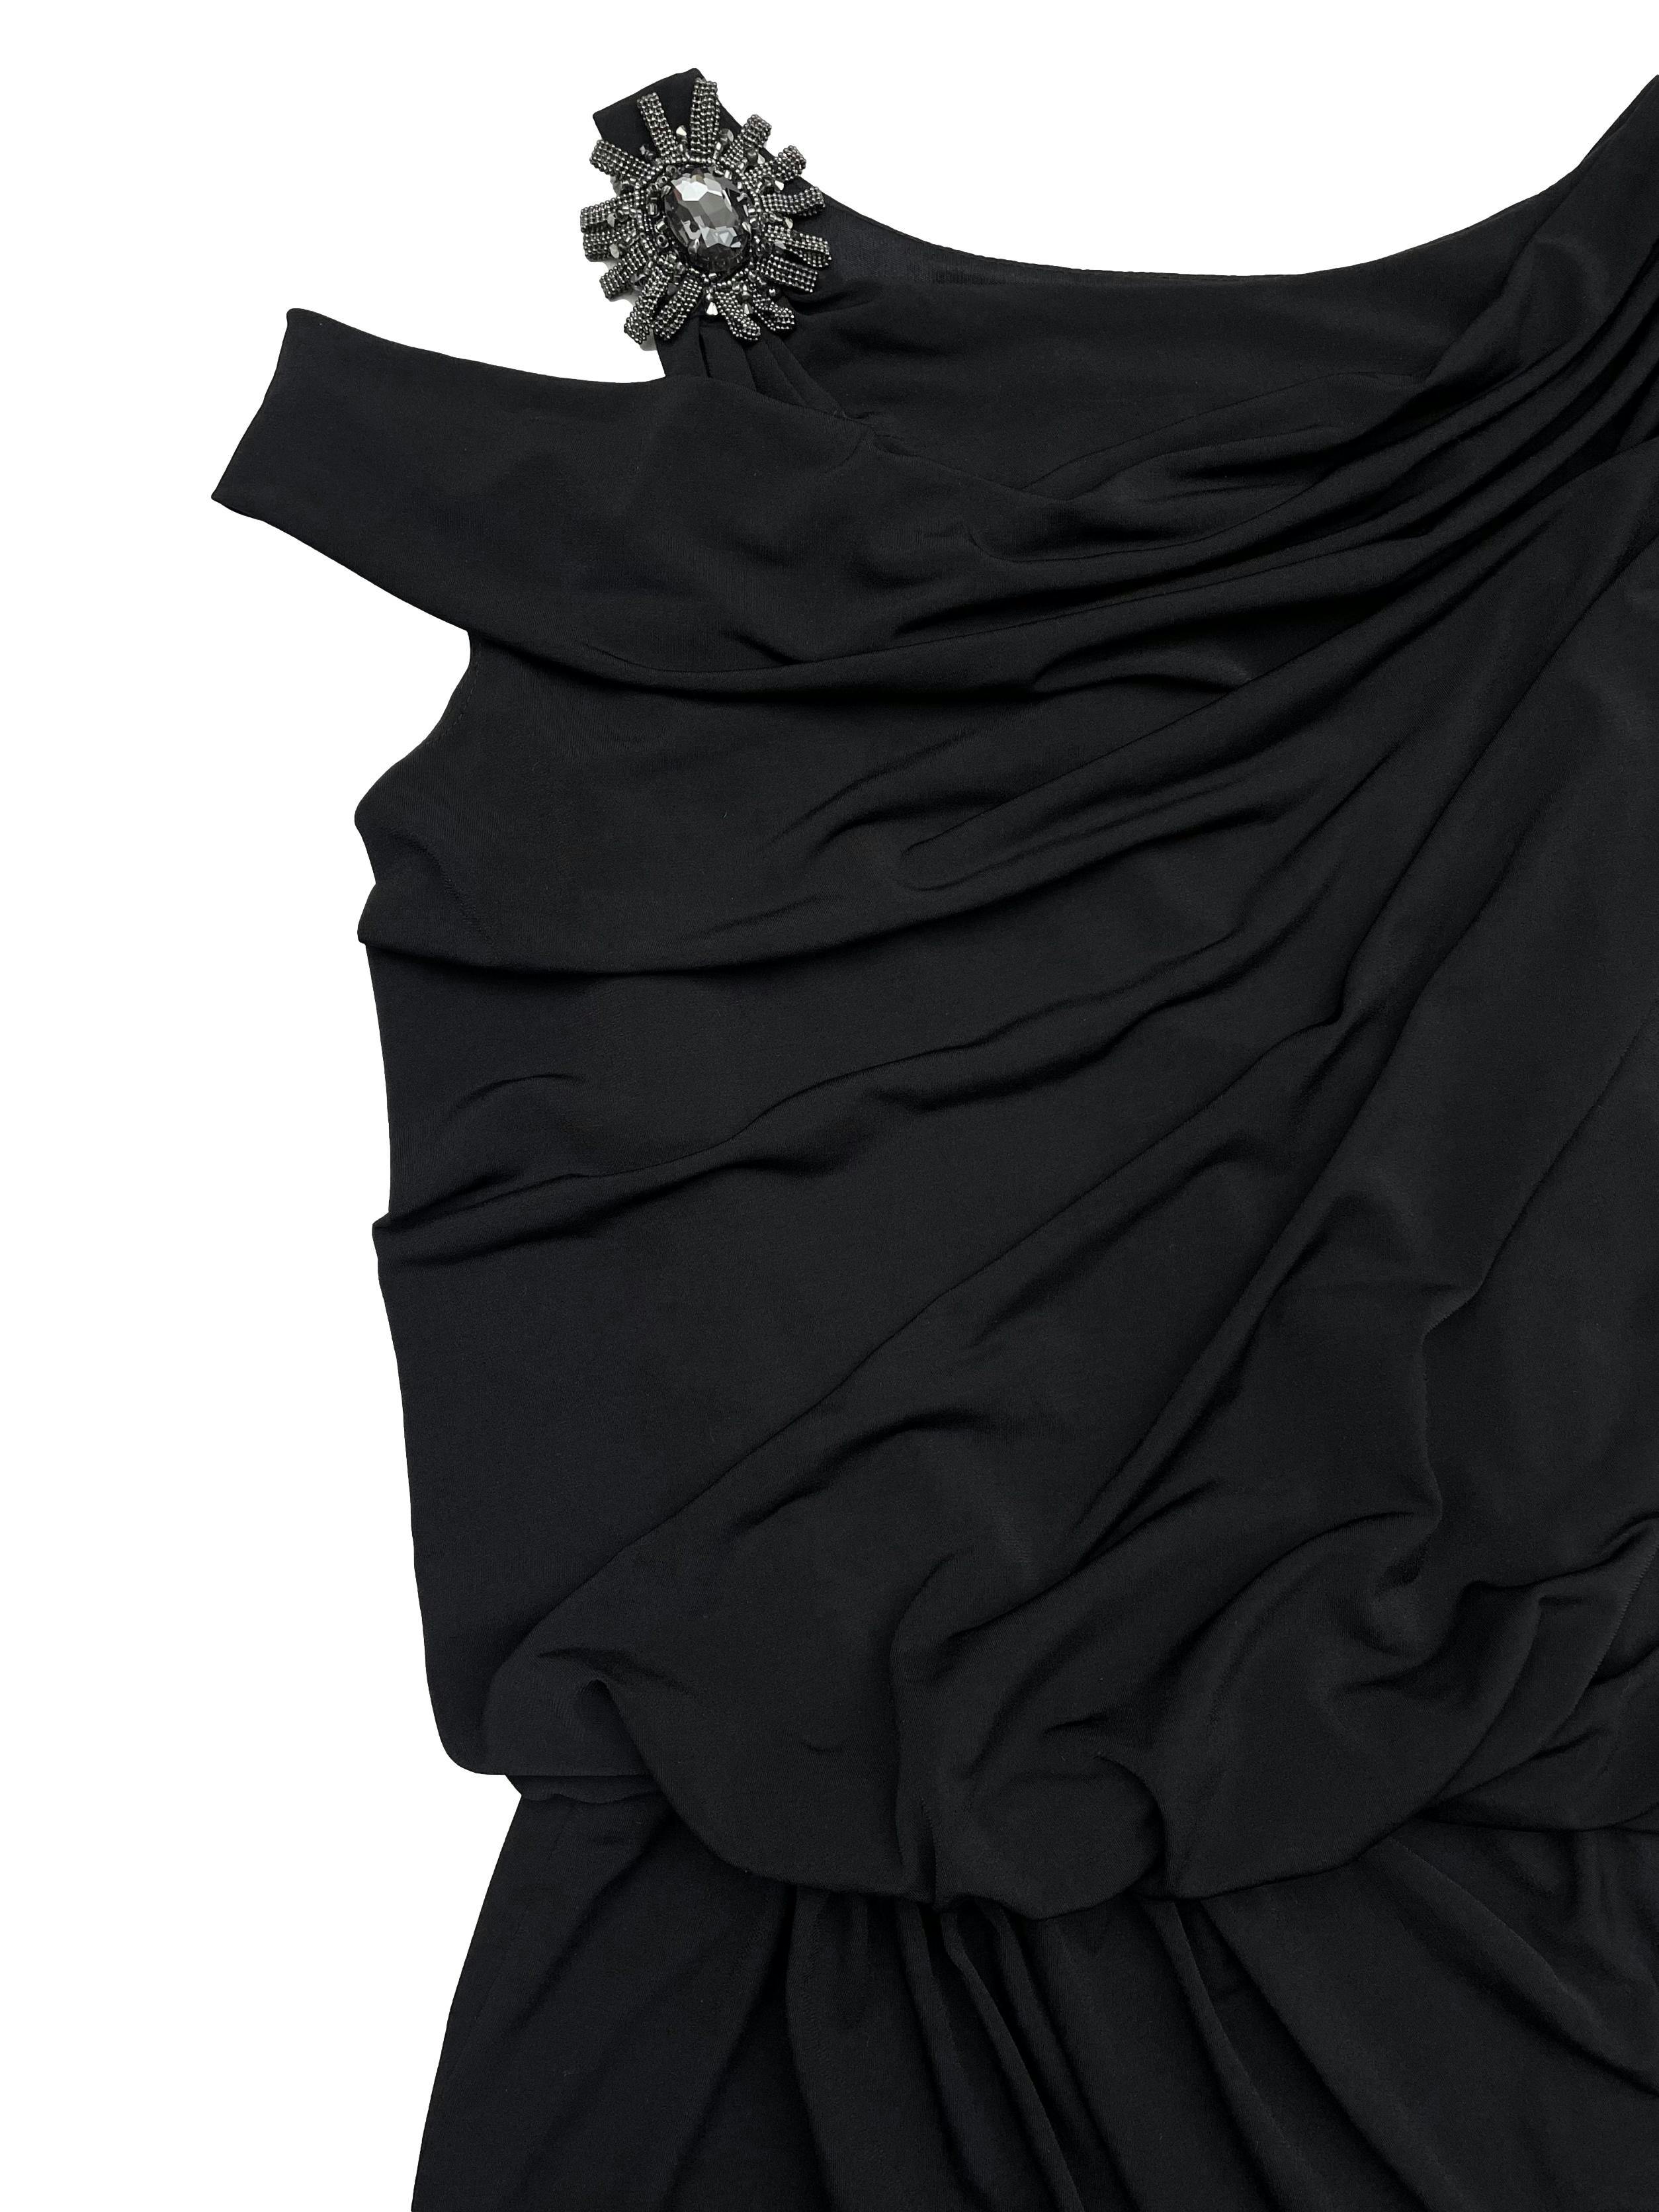 Vestido David Meister stretch negro tipo lycra, recogido en un hombro, otro con pedrería y hombro caído, zonas drapeadas, es forrado. Busto 90cm Largo 95cm. Precio original S/ 800